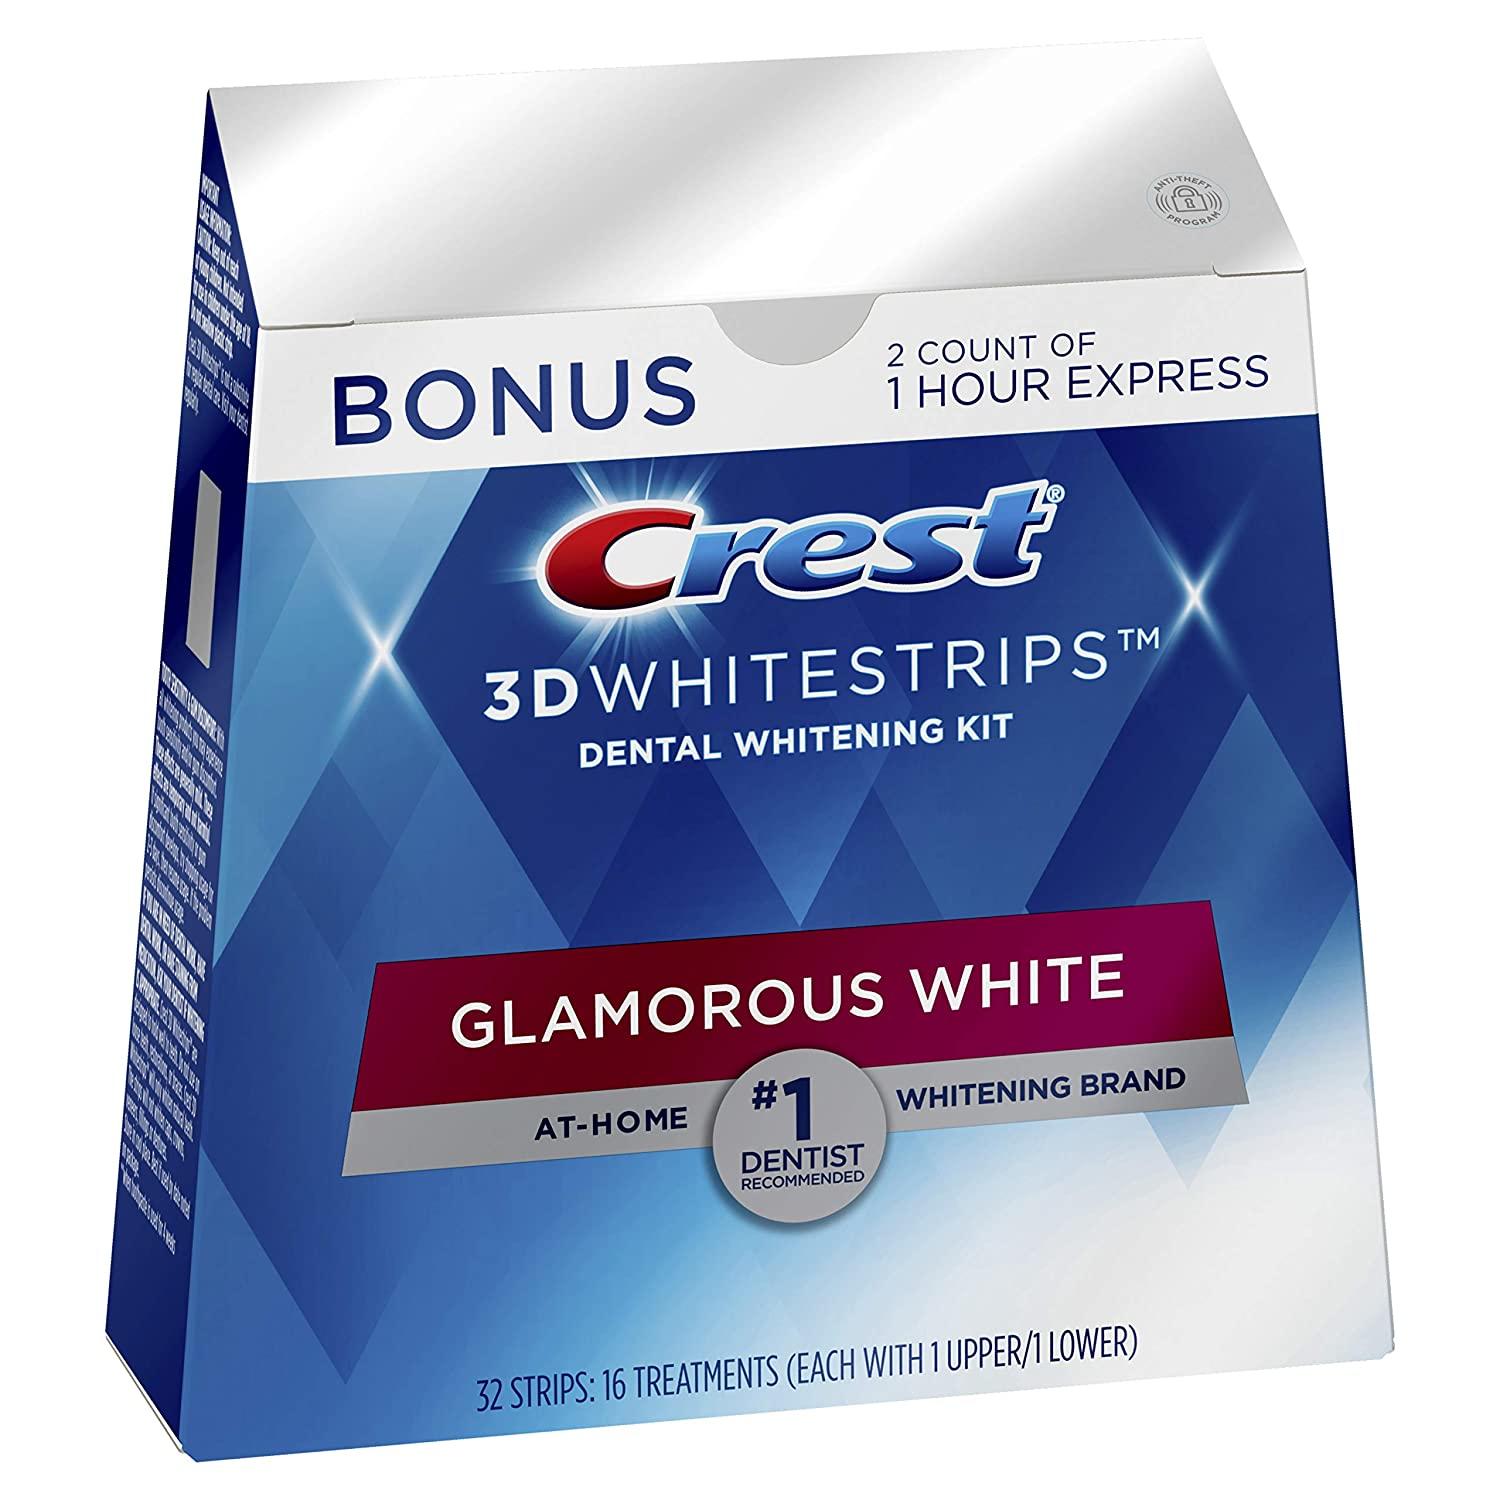 Crest 3D Whitestrips Glamorous White 